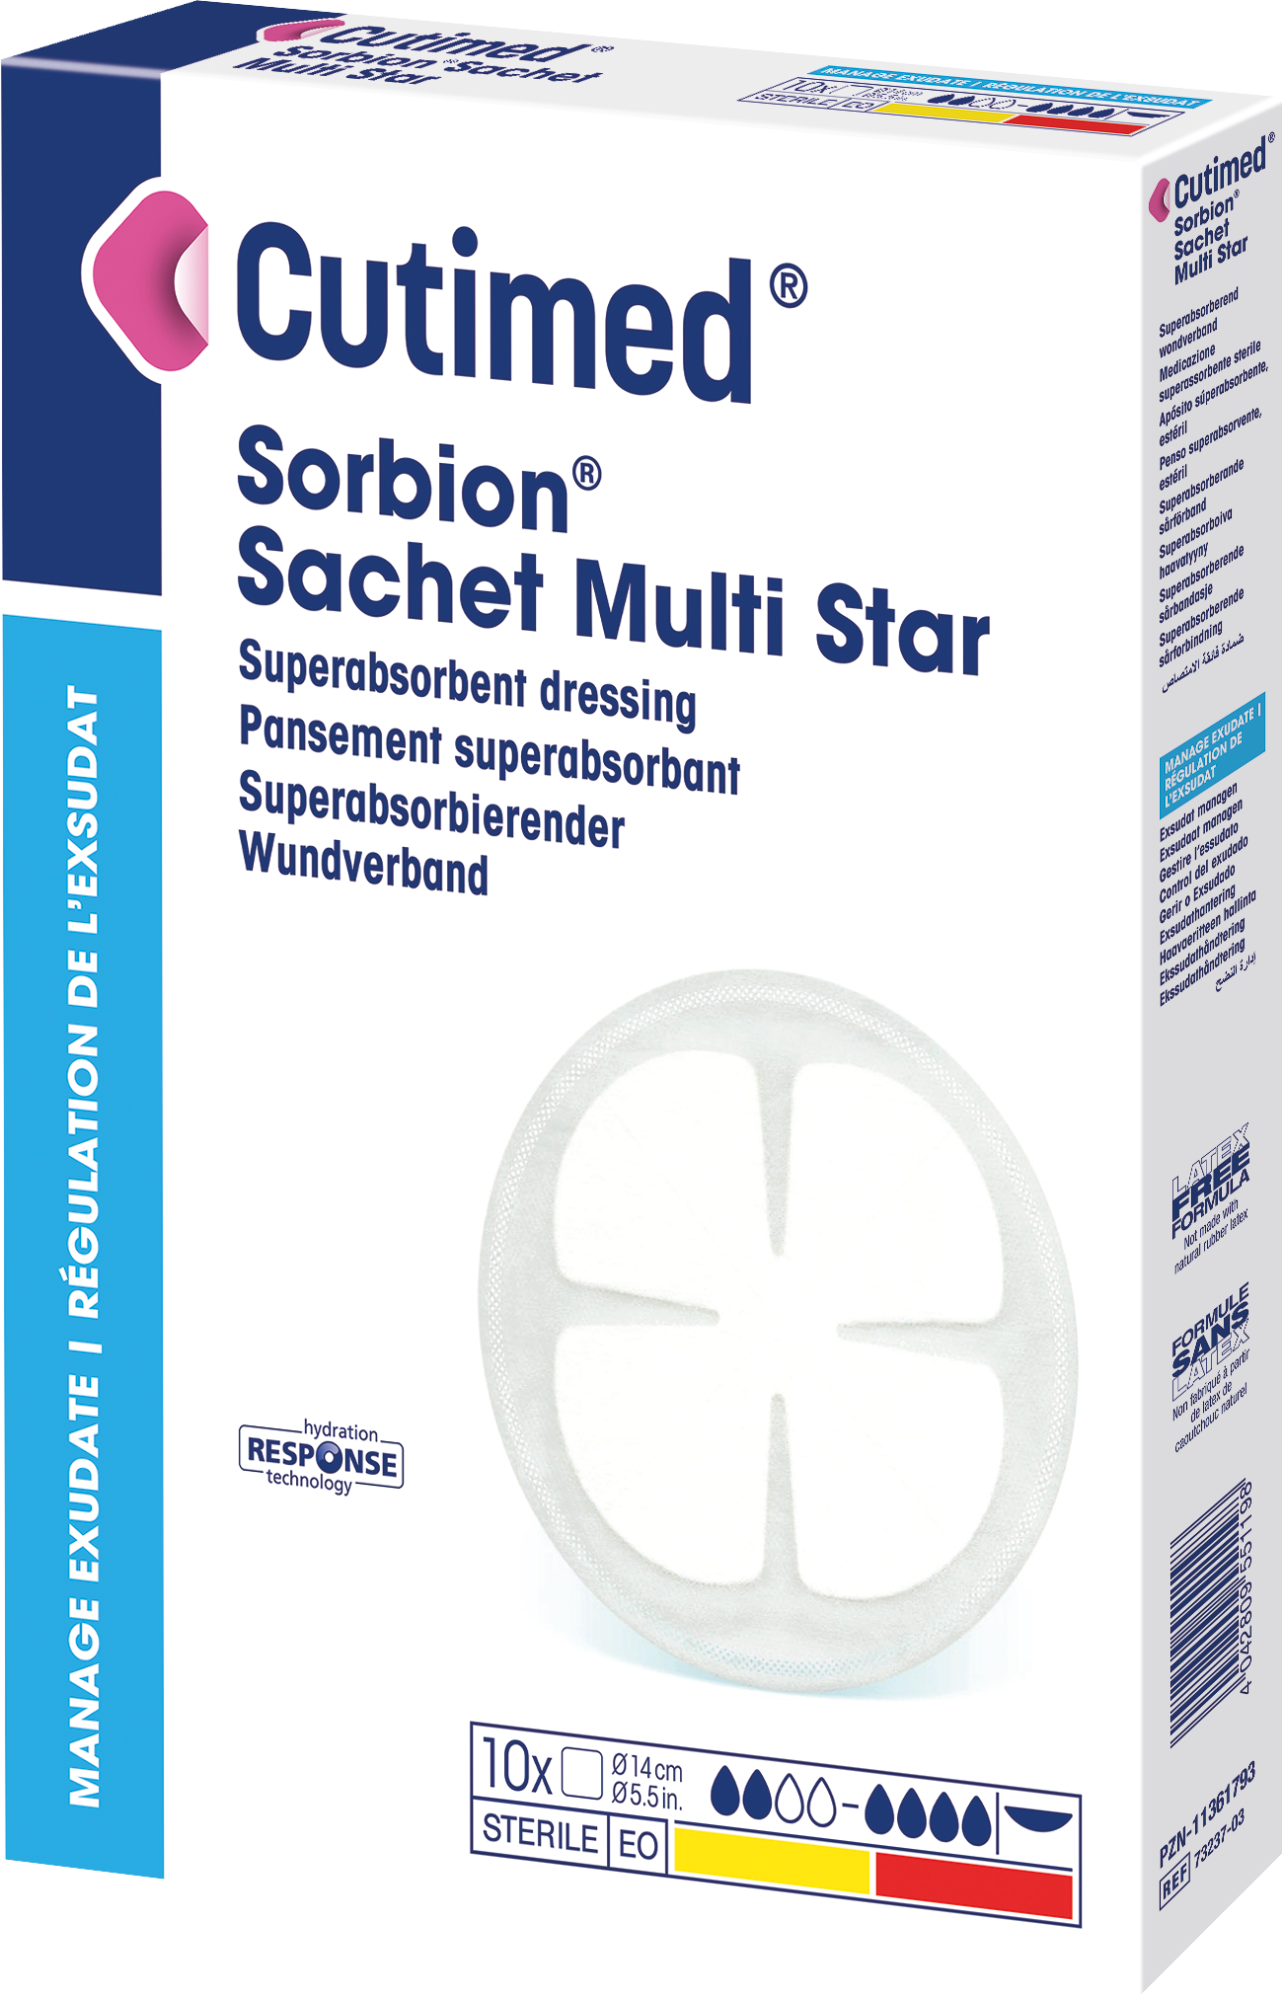 Immagine di una confezione di Cutimed® Sorbion® Sachet Multi Star